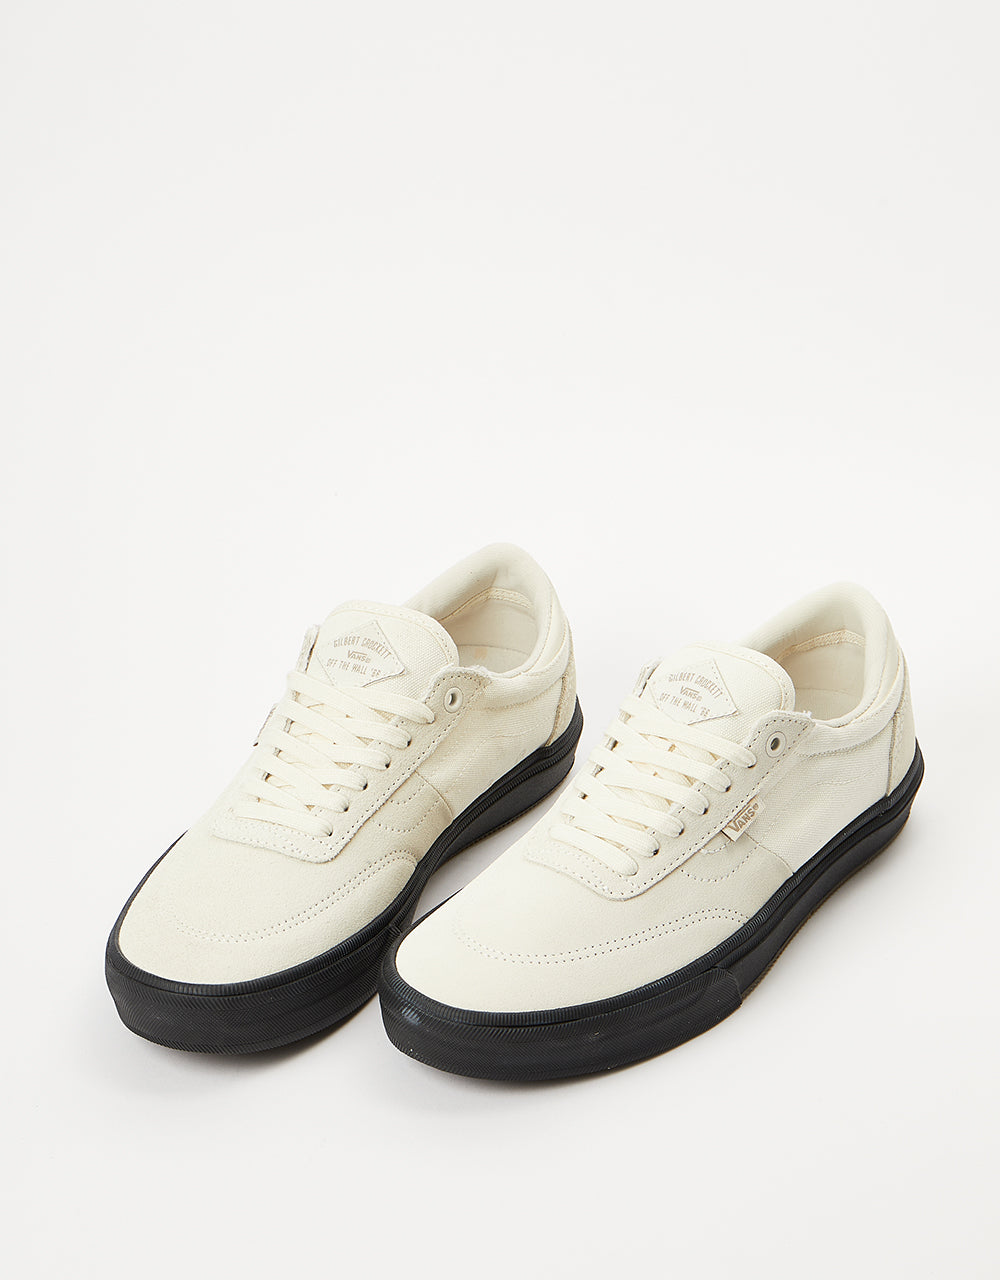 Vans Gilbert Crockett Skate Shoes - Antique White/Black